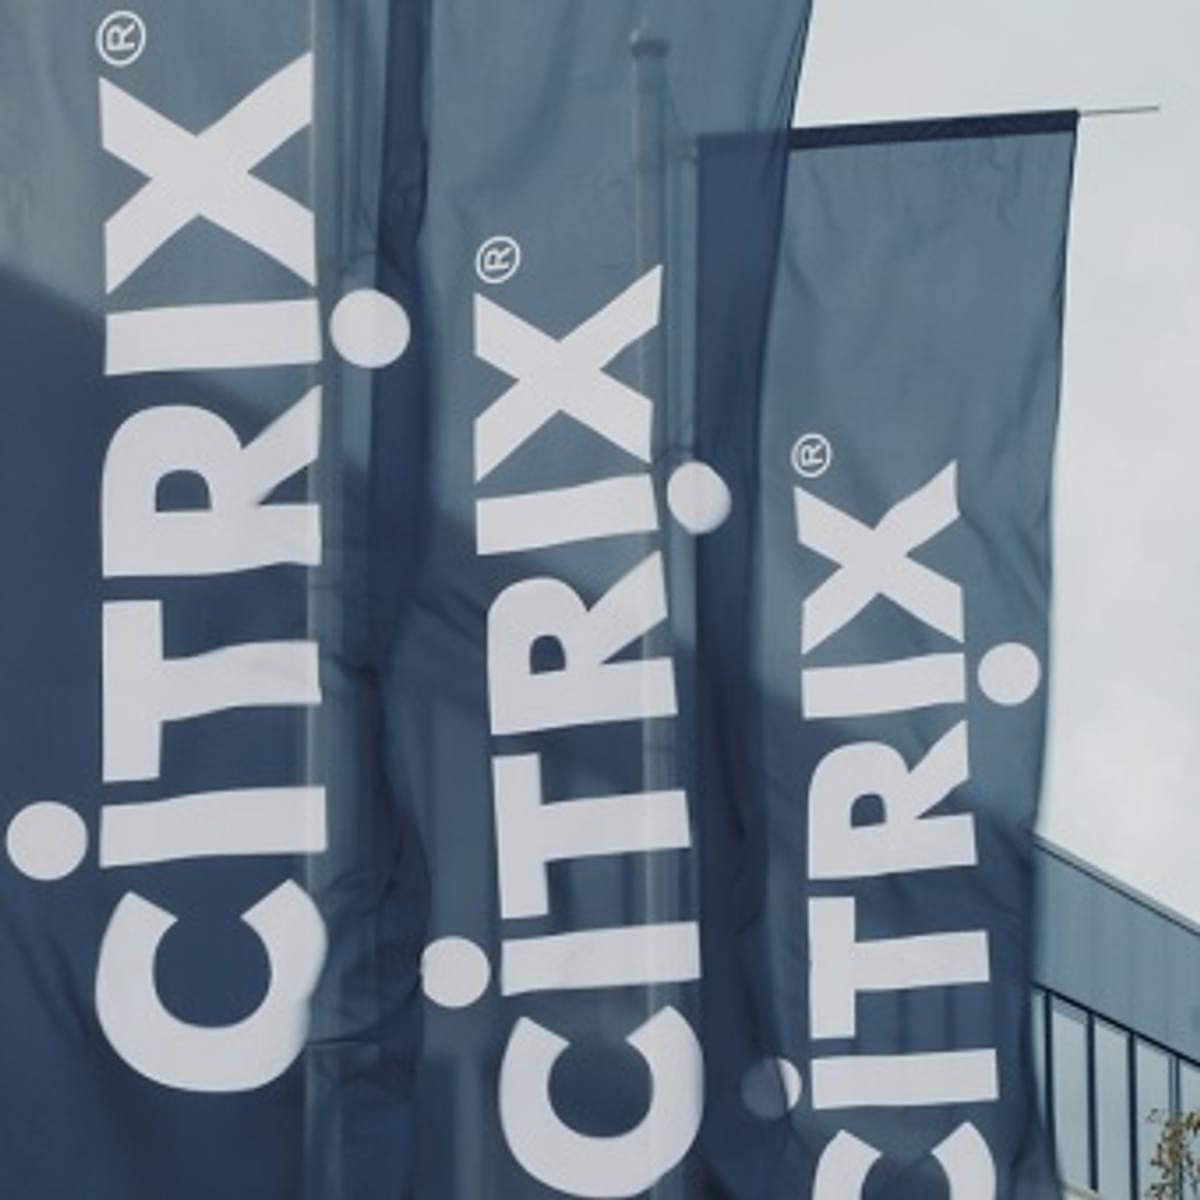 Meerdere kwetsbaarheden ontdekt in Citrix netwerk toepassingen image